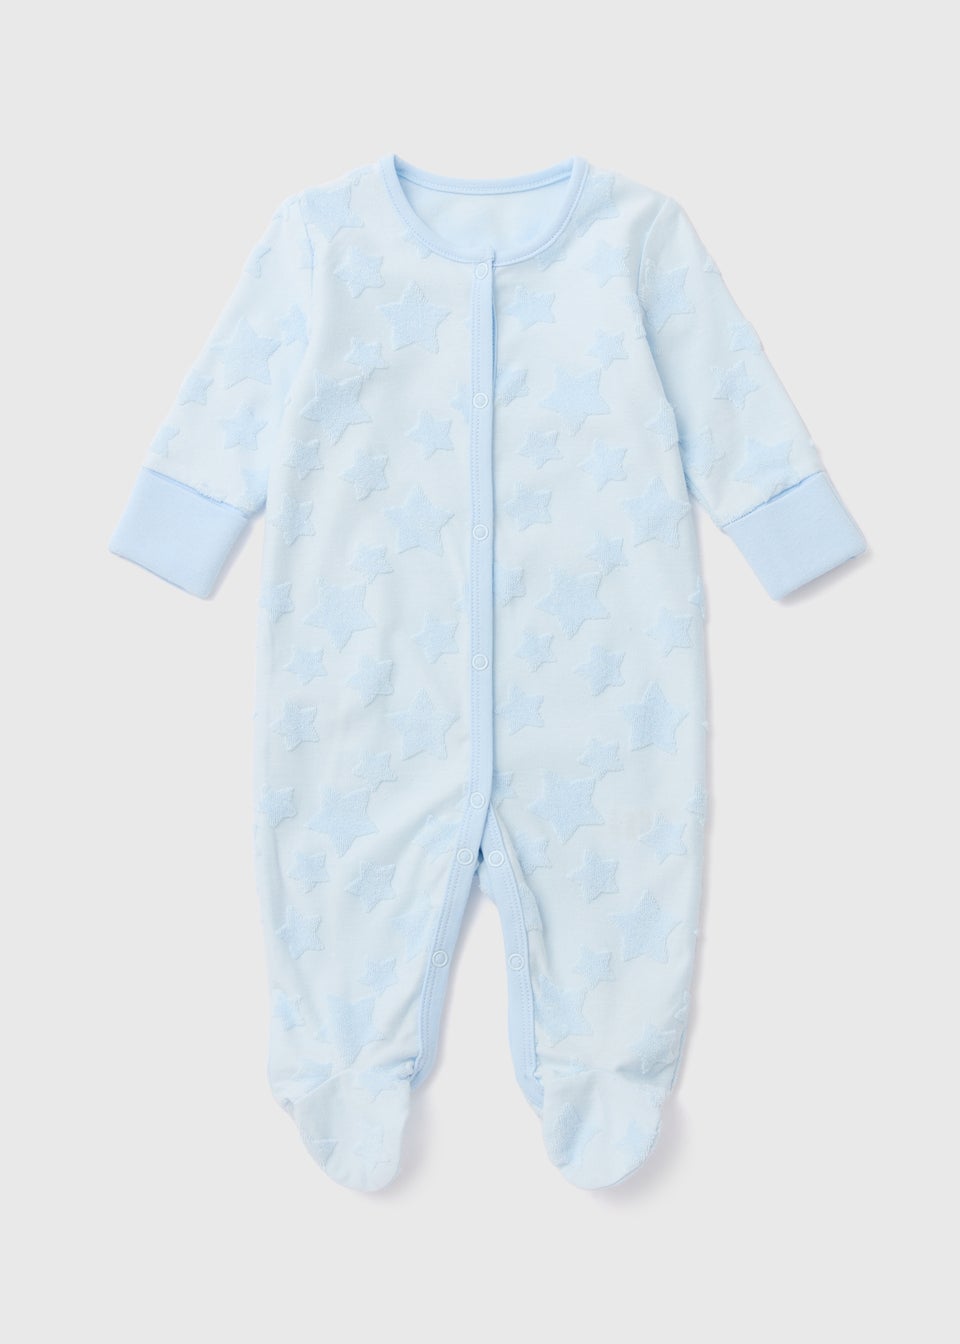 Baby Blue Star Embroidered Sleepsuit (Newborn-18mths)